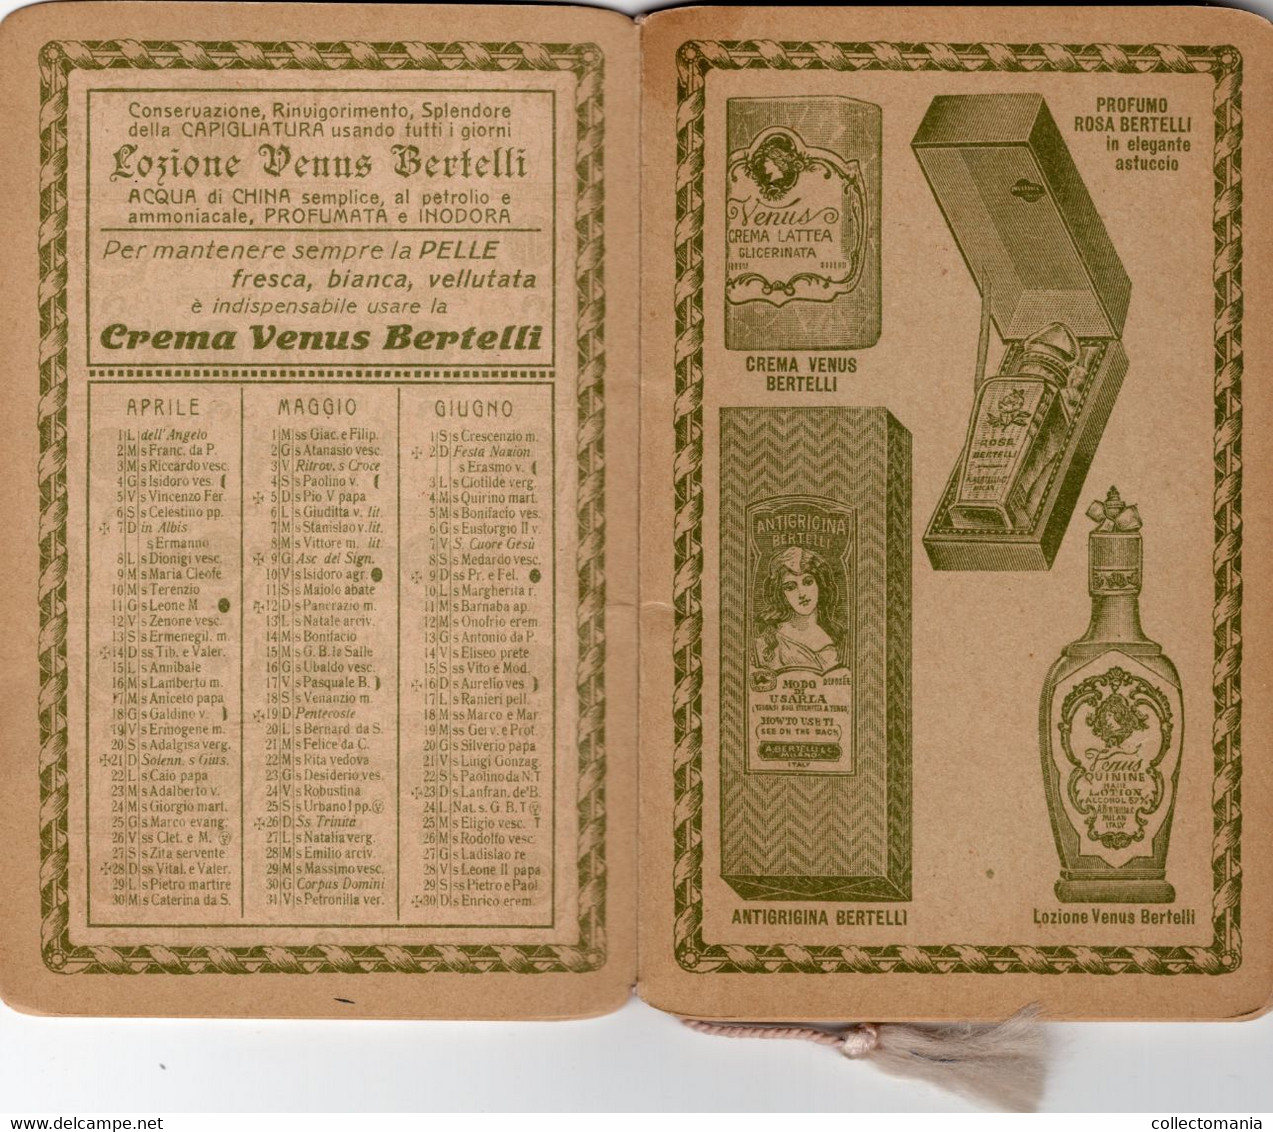 1 Carnet  Booklet  PARFUM Bertilli  Calendrier Almanacco 1918  Al Profumo Rosa  Bertelli - Non Classés